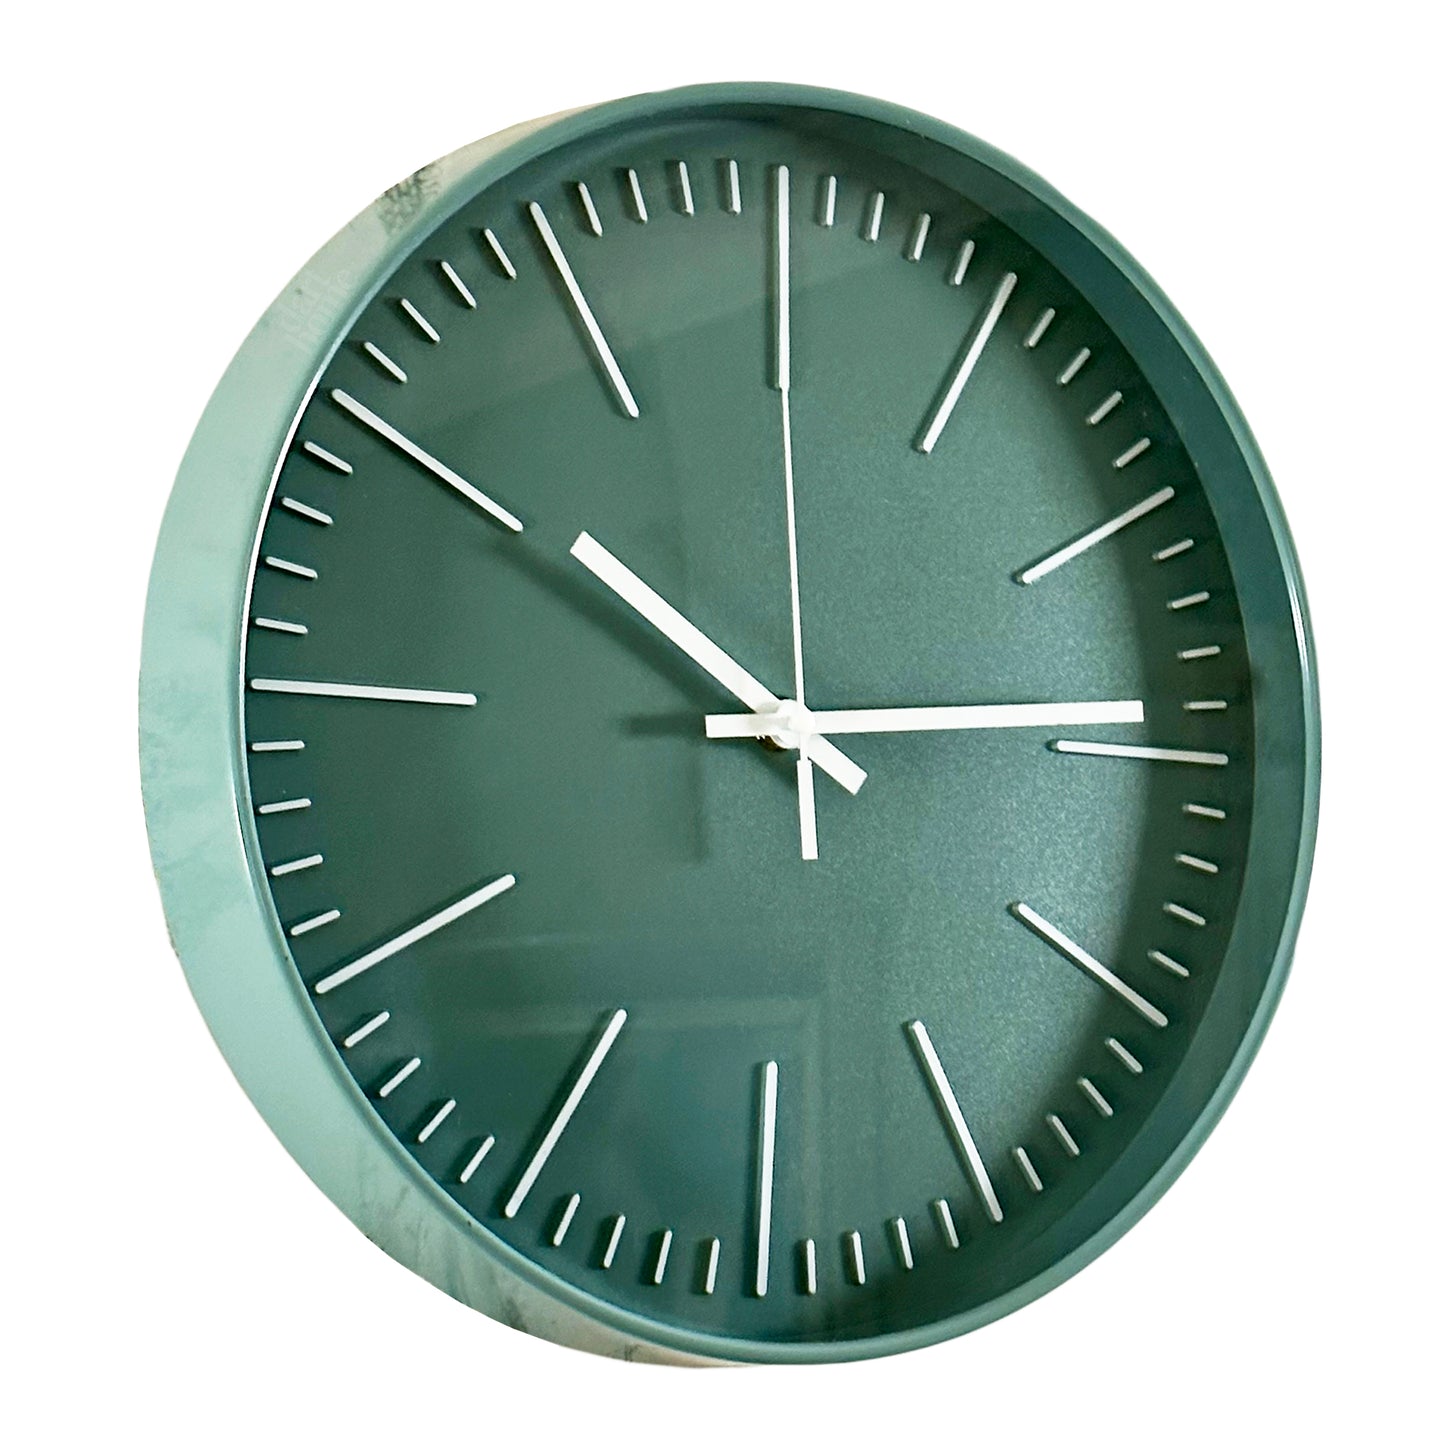 Teal Green Wall Clock